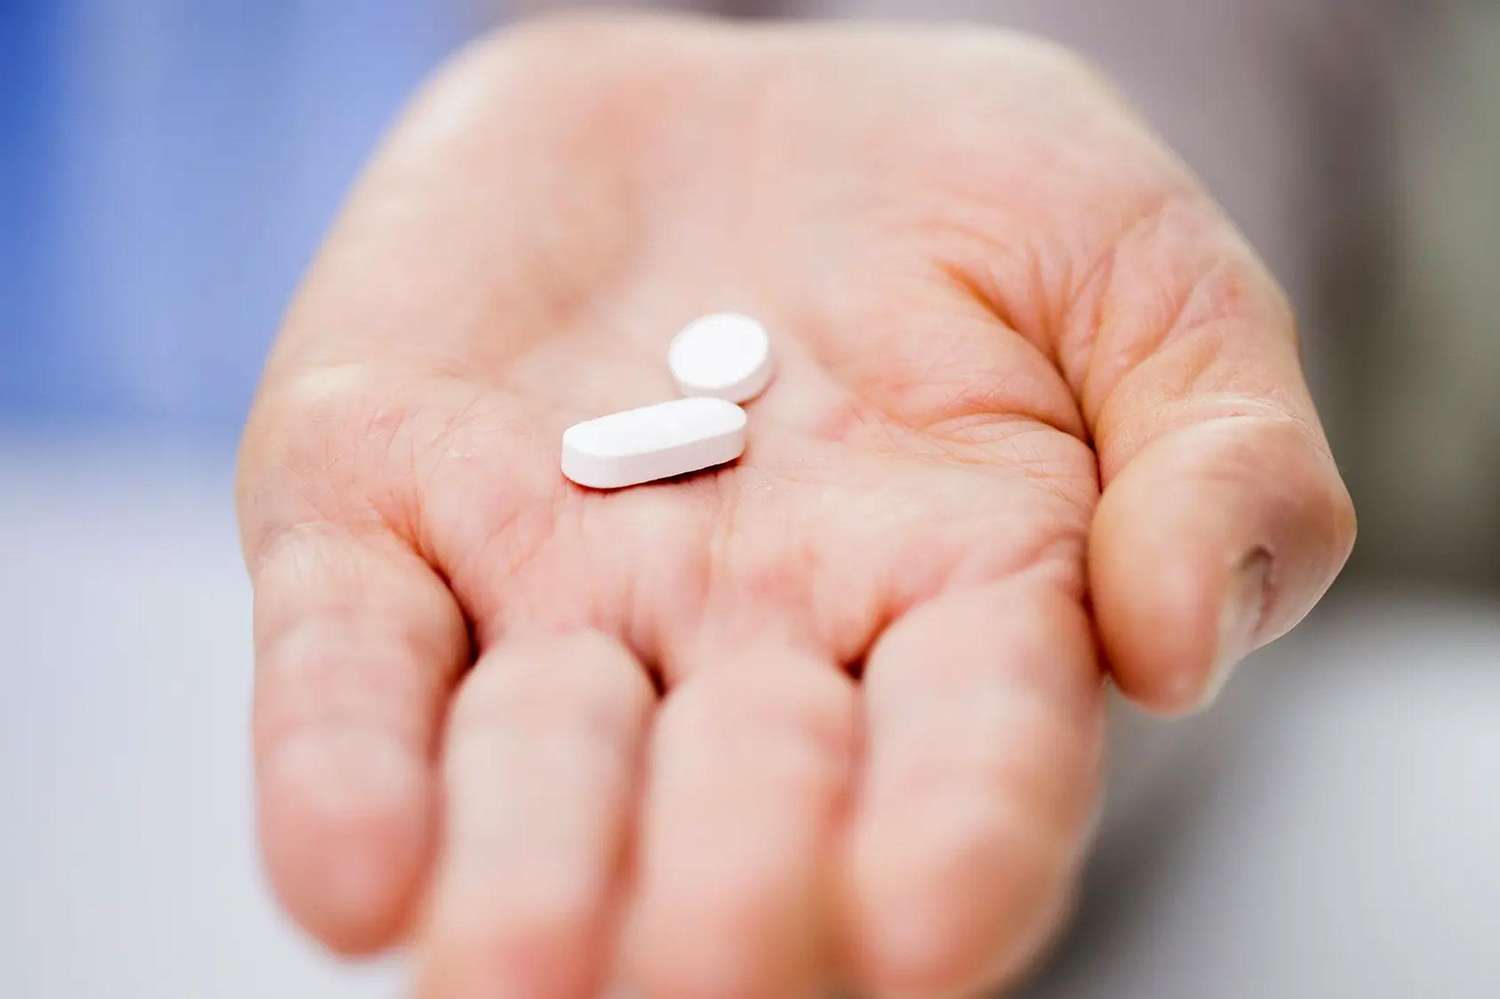 El ibuprofeno es eficaz y seguro cuando se utiliza en forma correcta